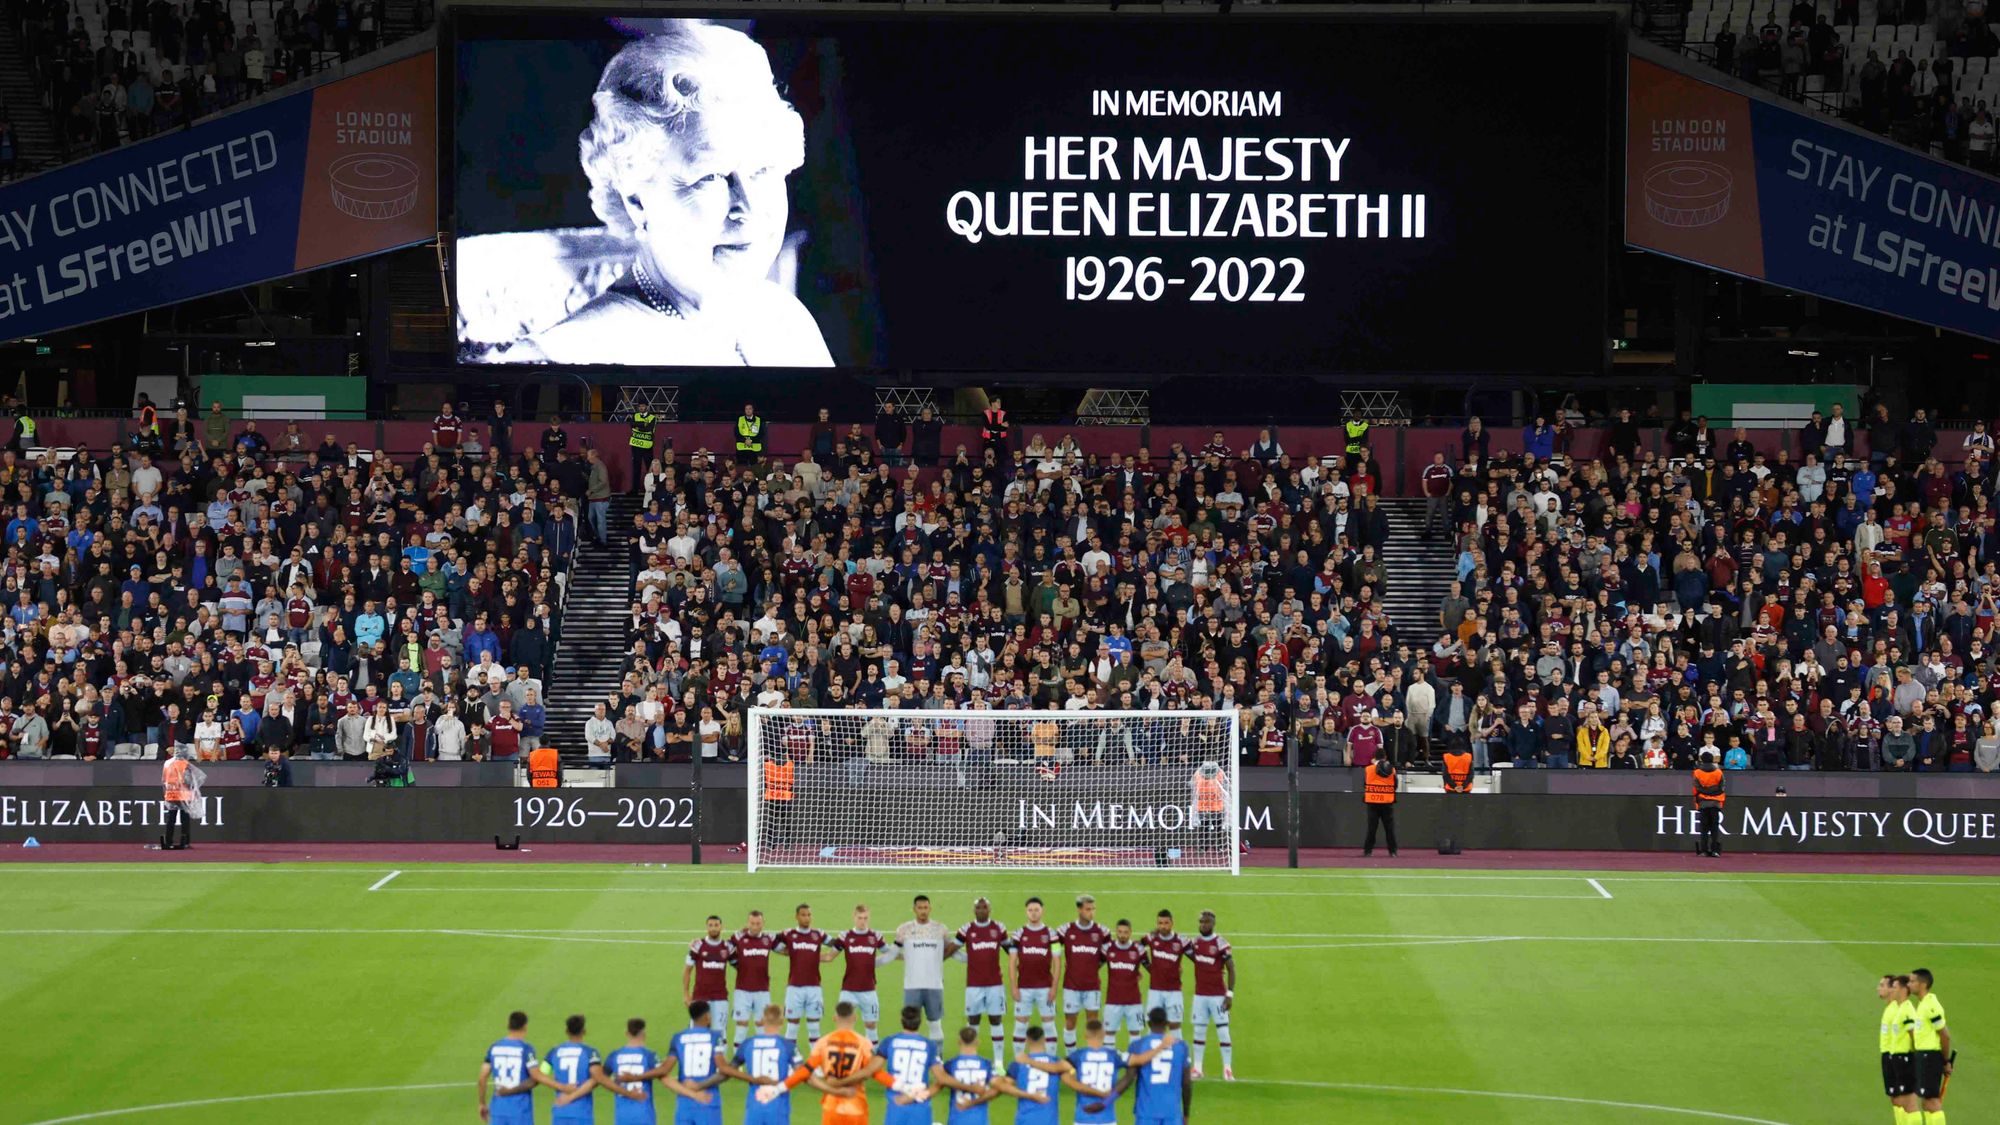 El futbol enmudeció; un minuto de silencio en memoria de la reina Isabel II